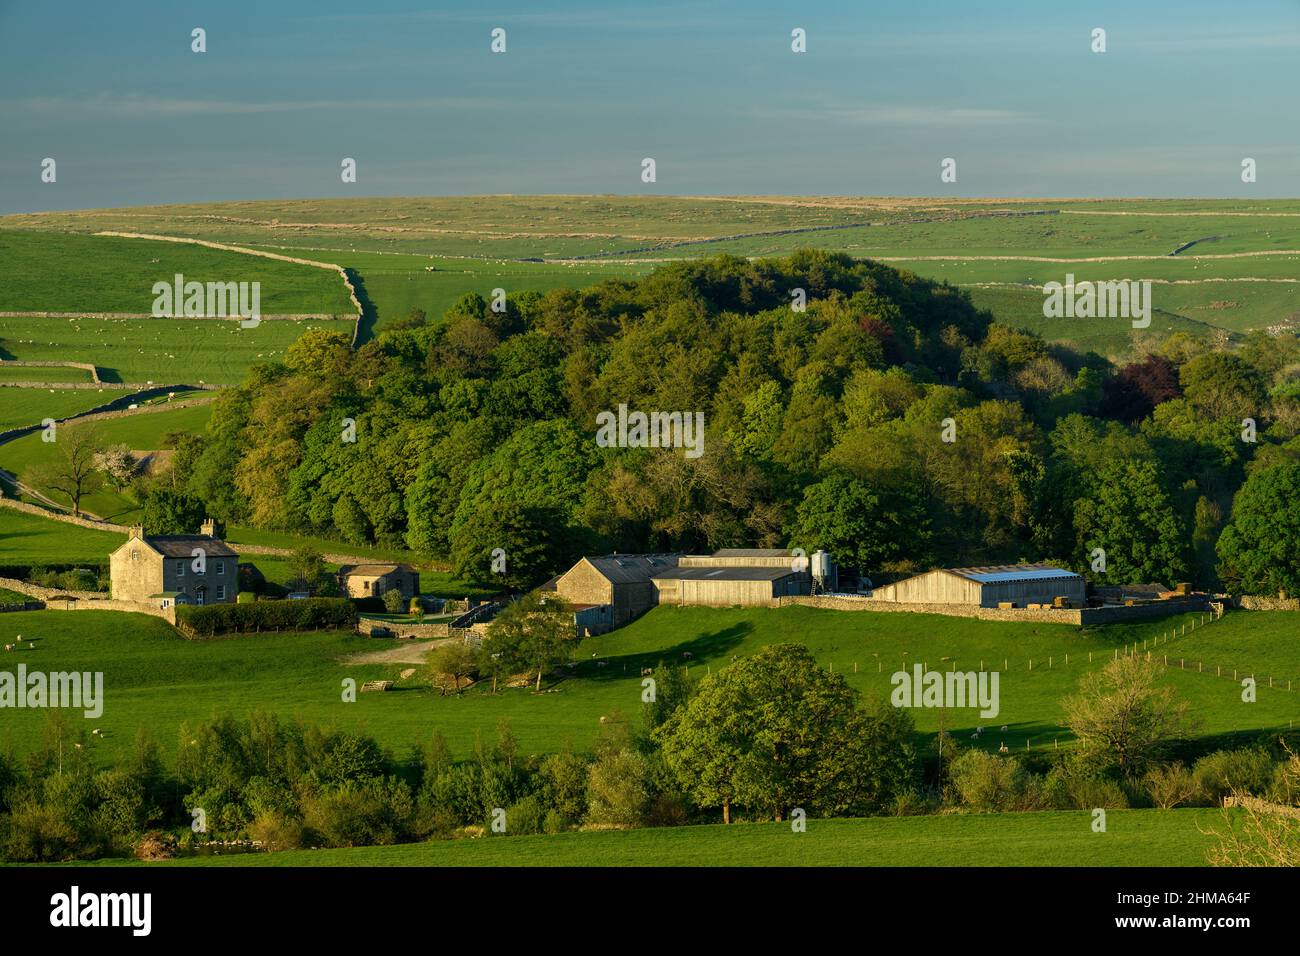 Antigua granja y dependencias en la pintoresca campiña de Yorkshire Dales (colinas ondulantes, ovejas en campos, paredes de piedra seca) - Burnsill, Inglaterra Reino Unido. Foto de stock